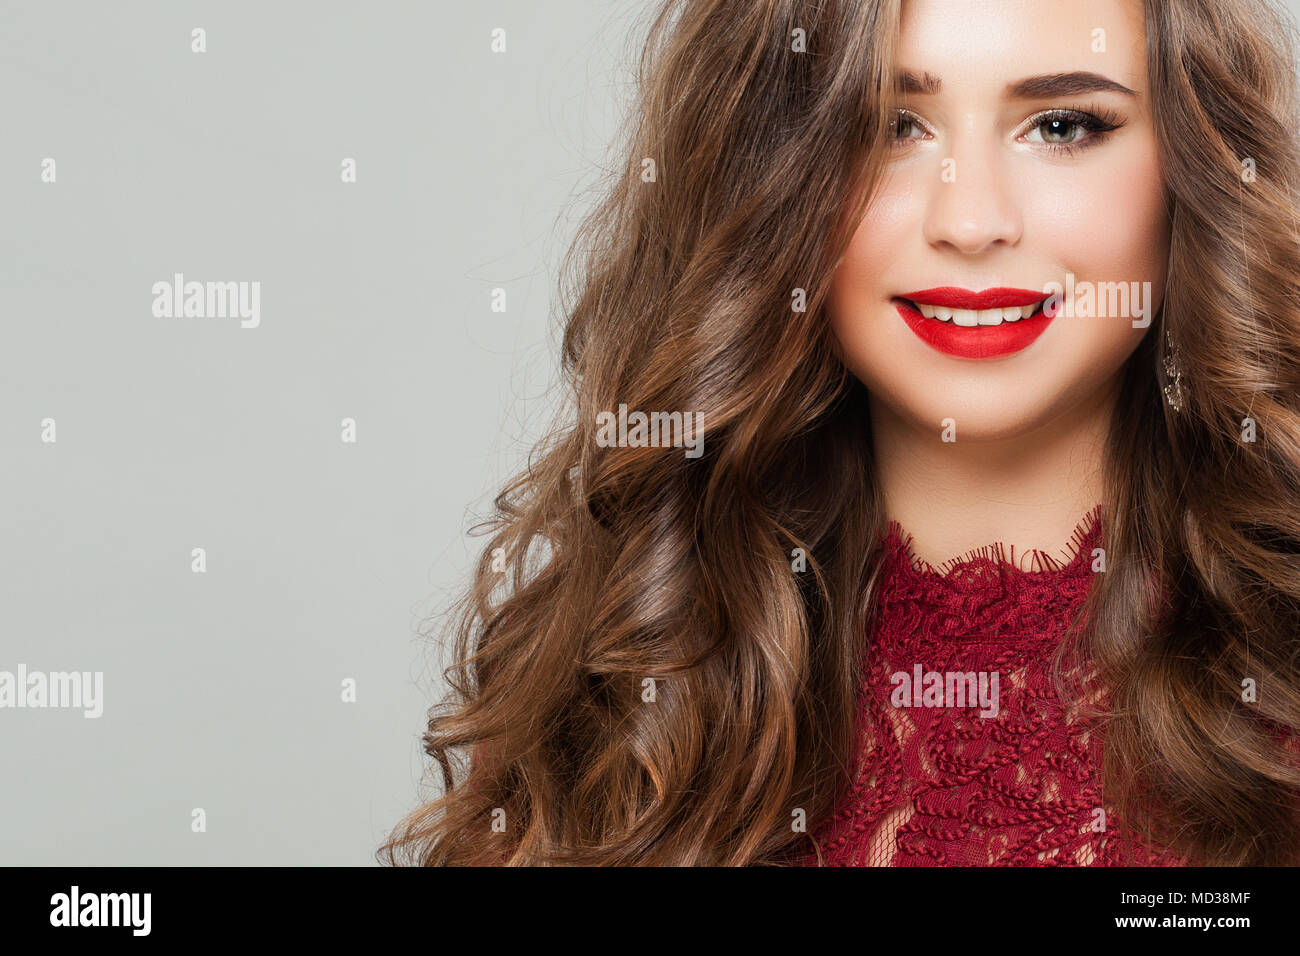 Jeune femme avec des longs cheveux permanentés. Portrait of Cute Smiling Girl Fashion model with Red Lips Makeup Banque D'Images